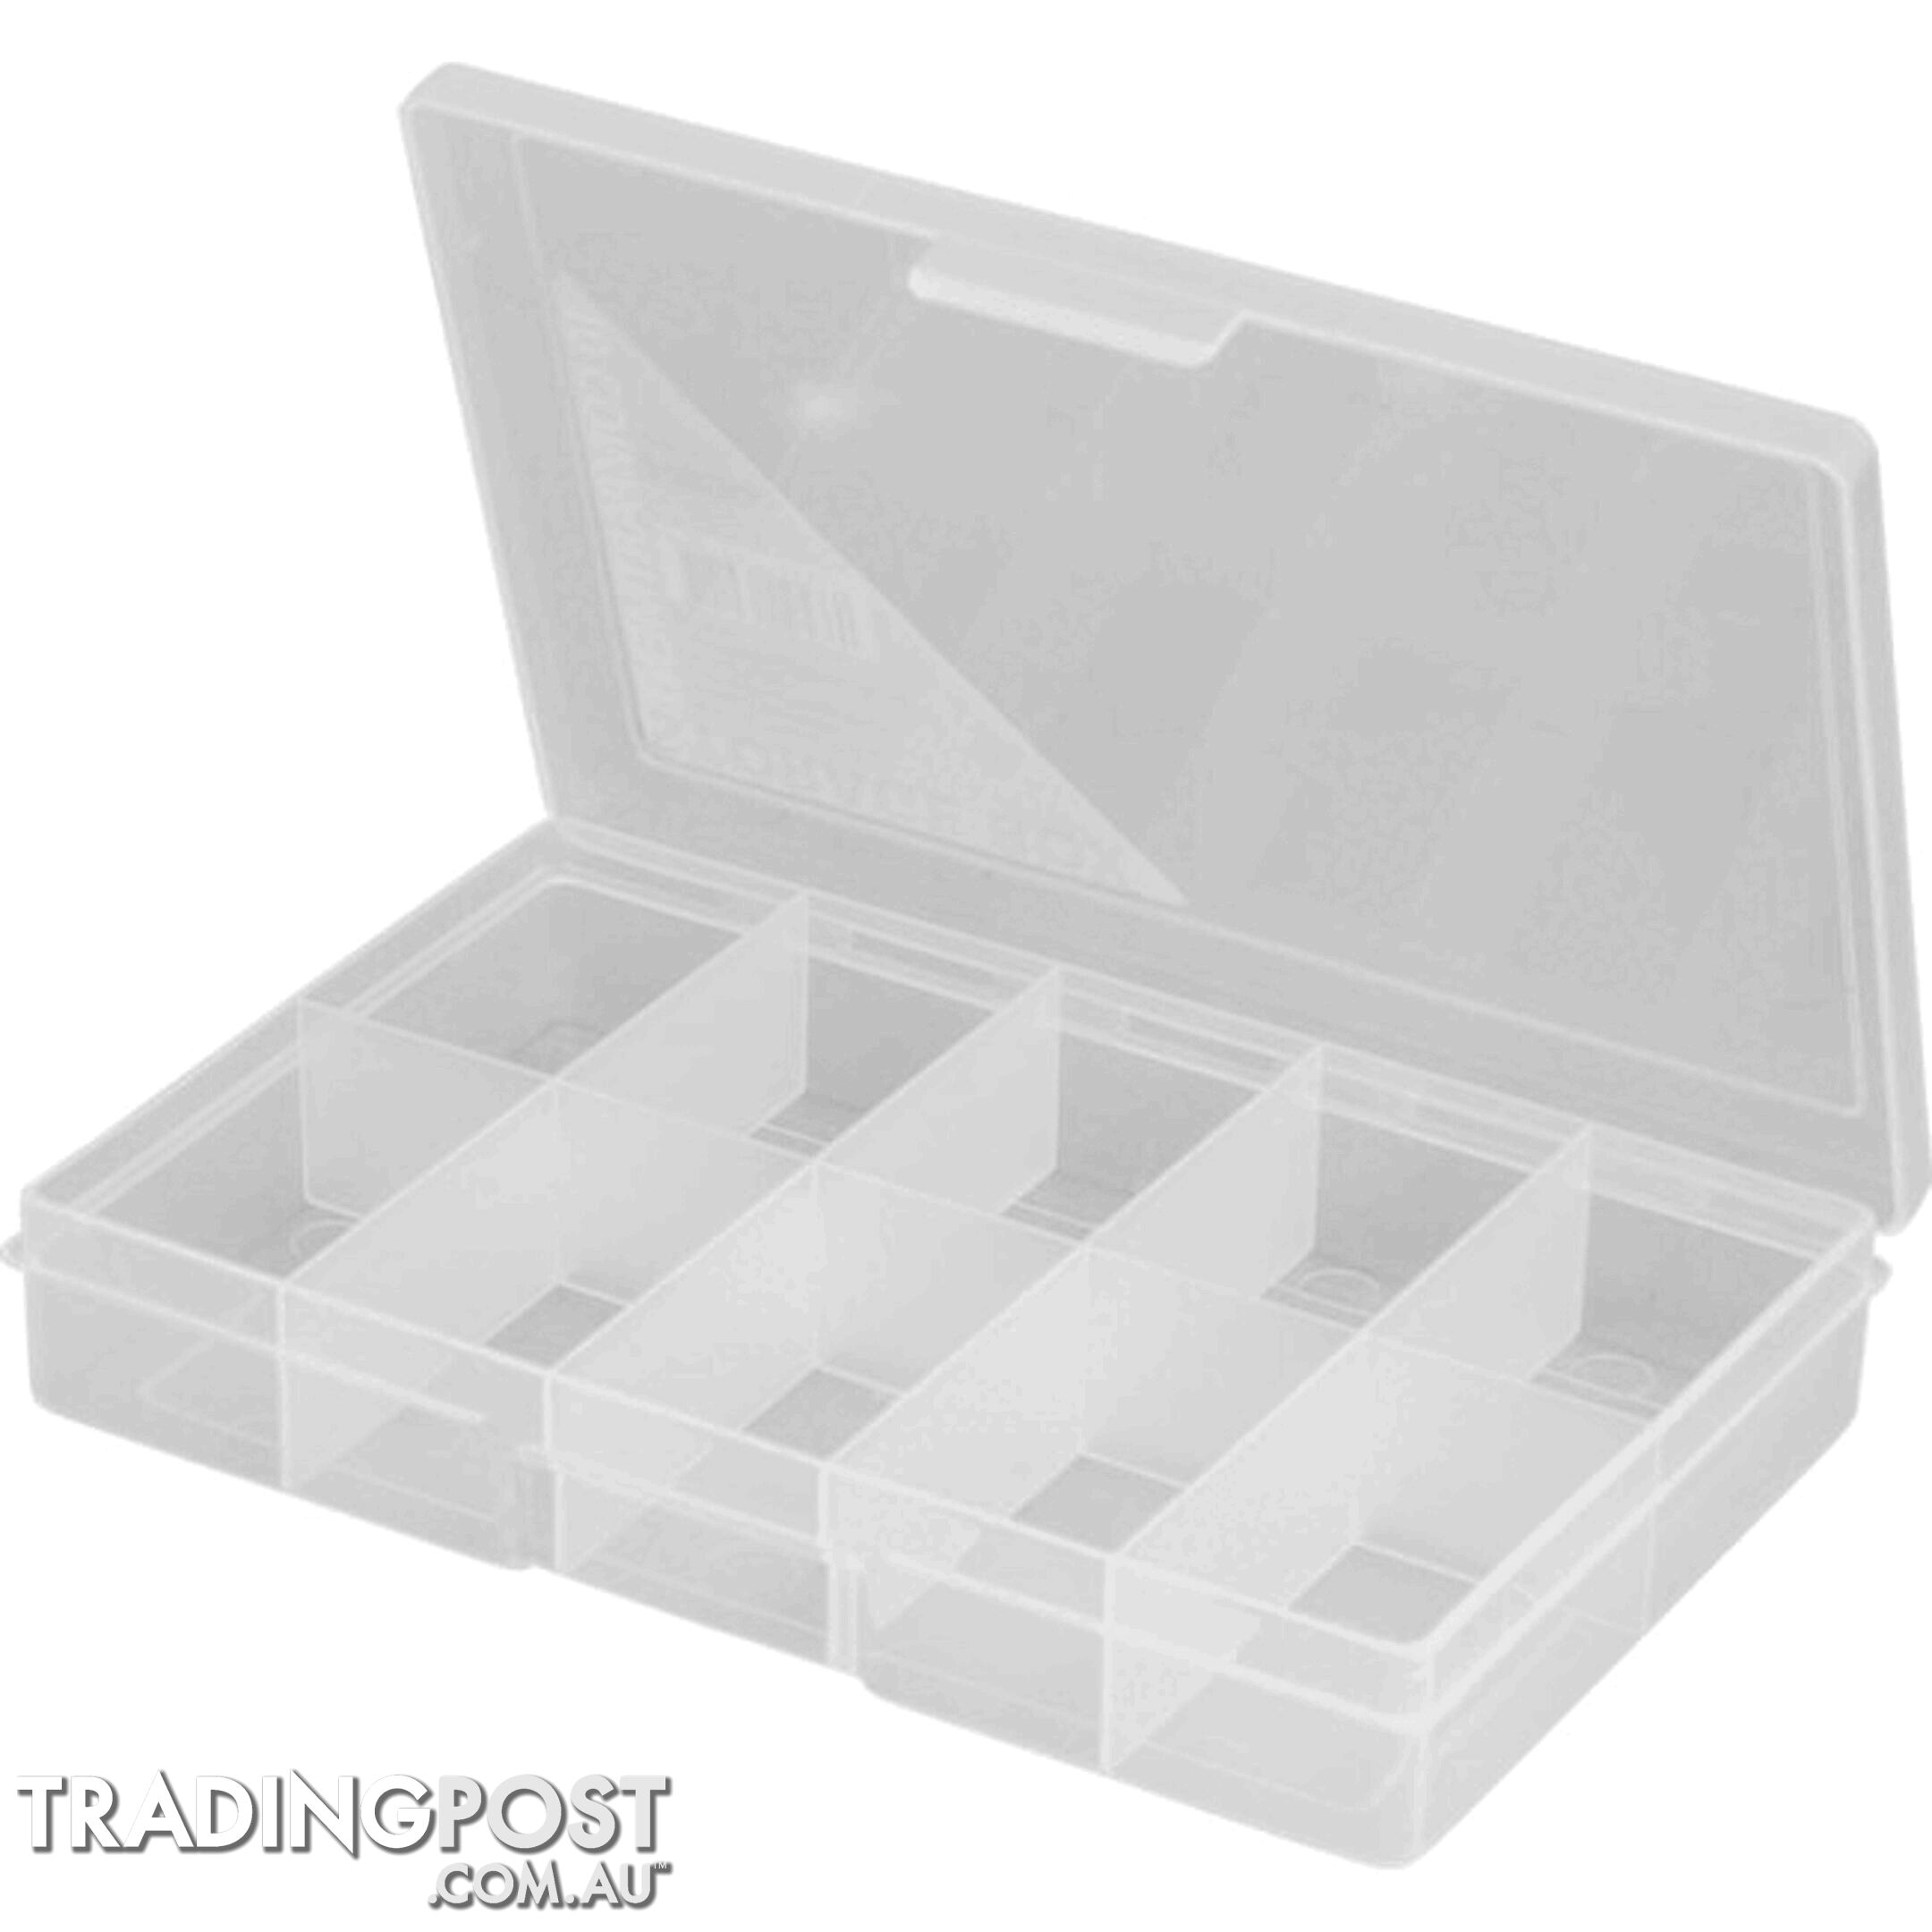 1H033 10 COMPARTMENT STORAGE BOX SMALL PLASTIC CASE